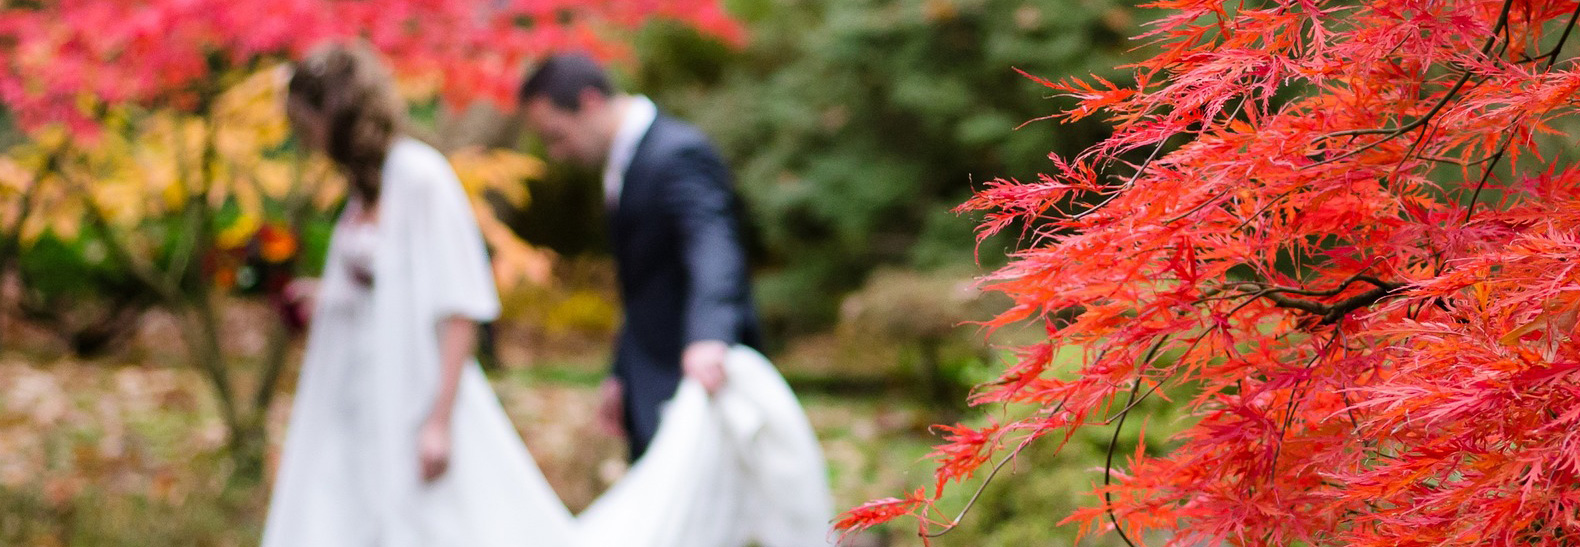 organizing-a-wedding-in-autumn